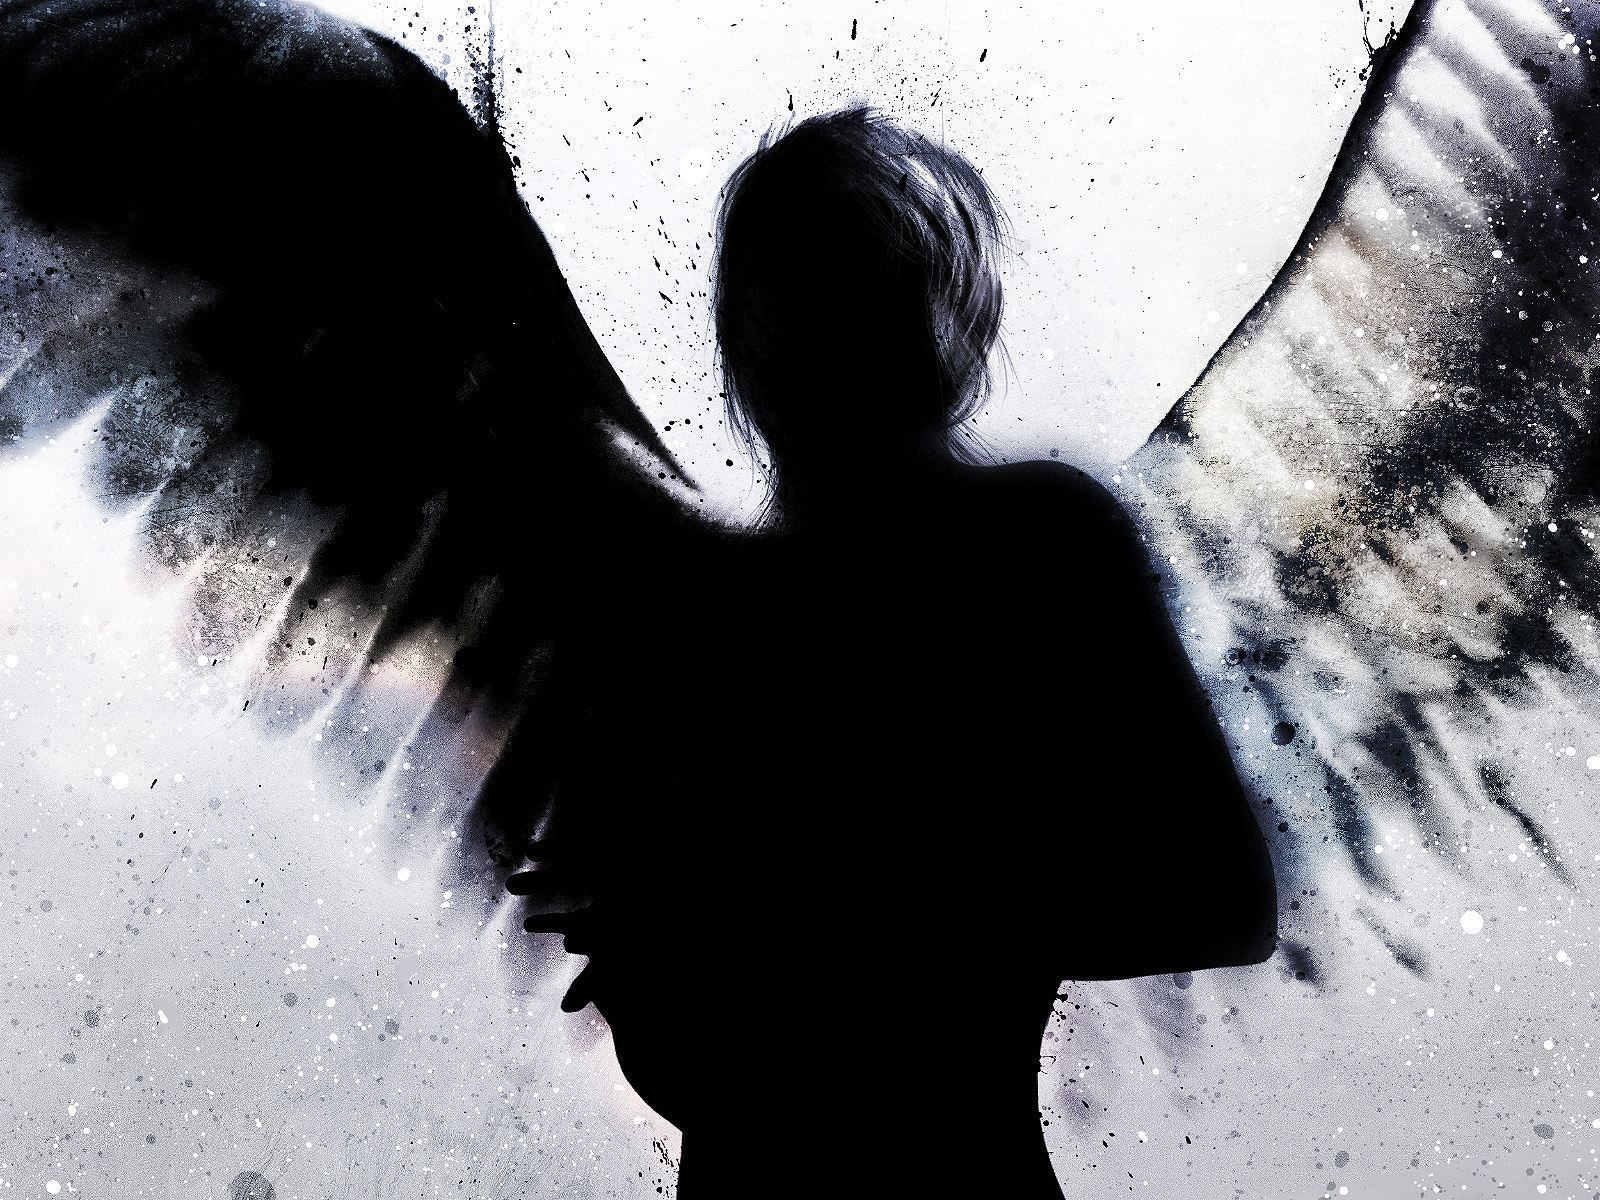 best free dark angels desktop backgrounds wallpapers hd download to